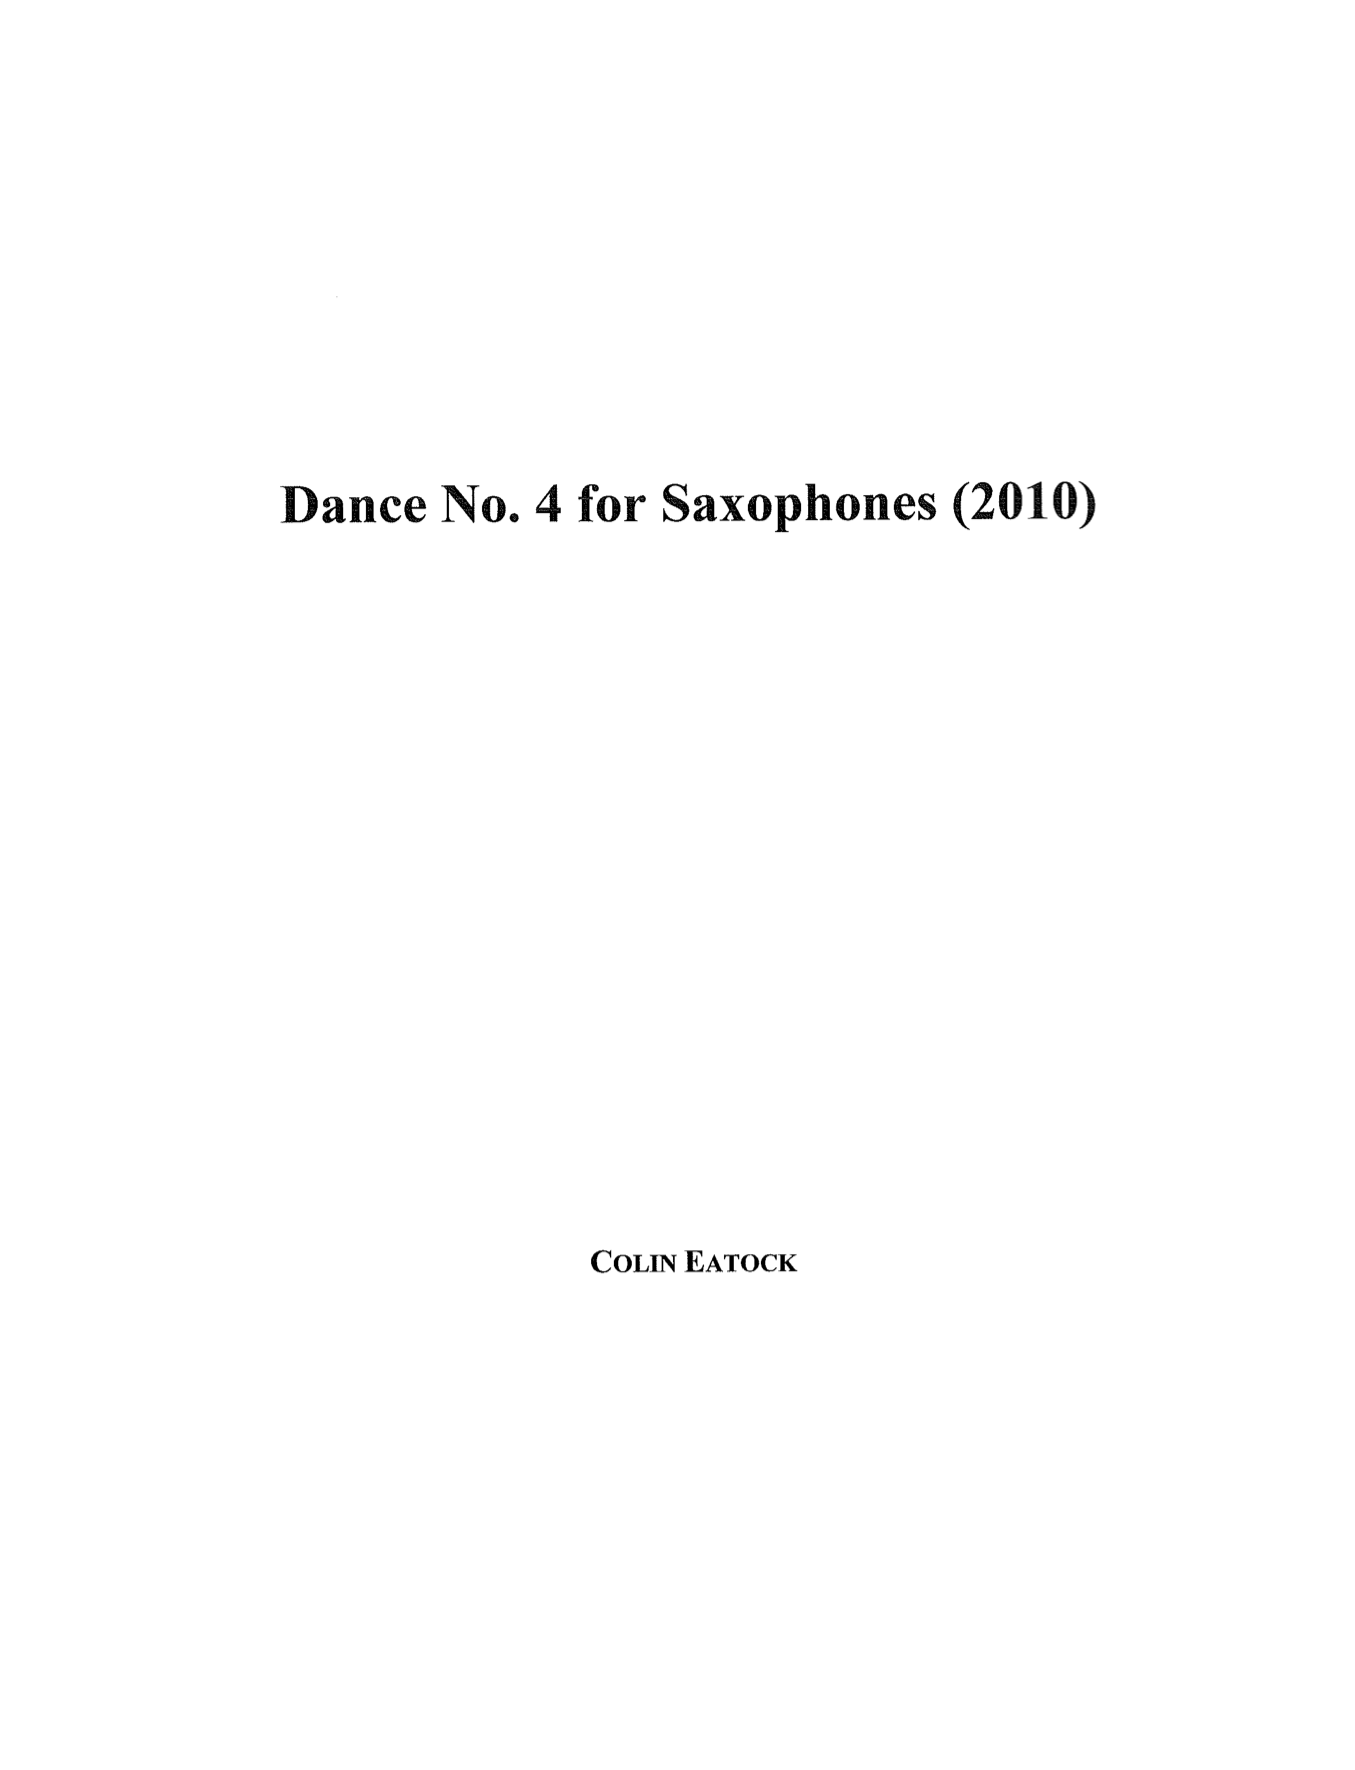 Dance No. 4 by Colin Eatock